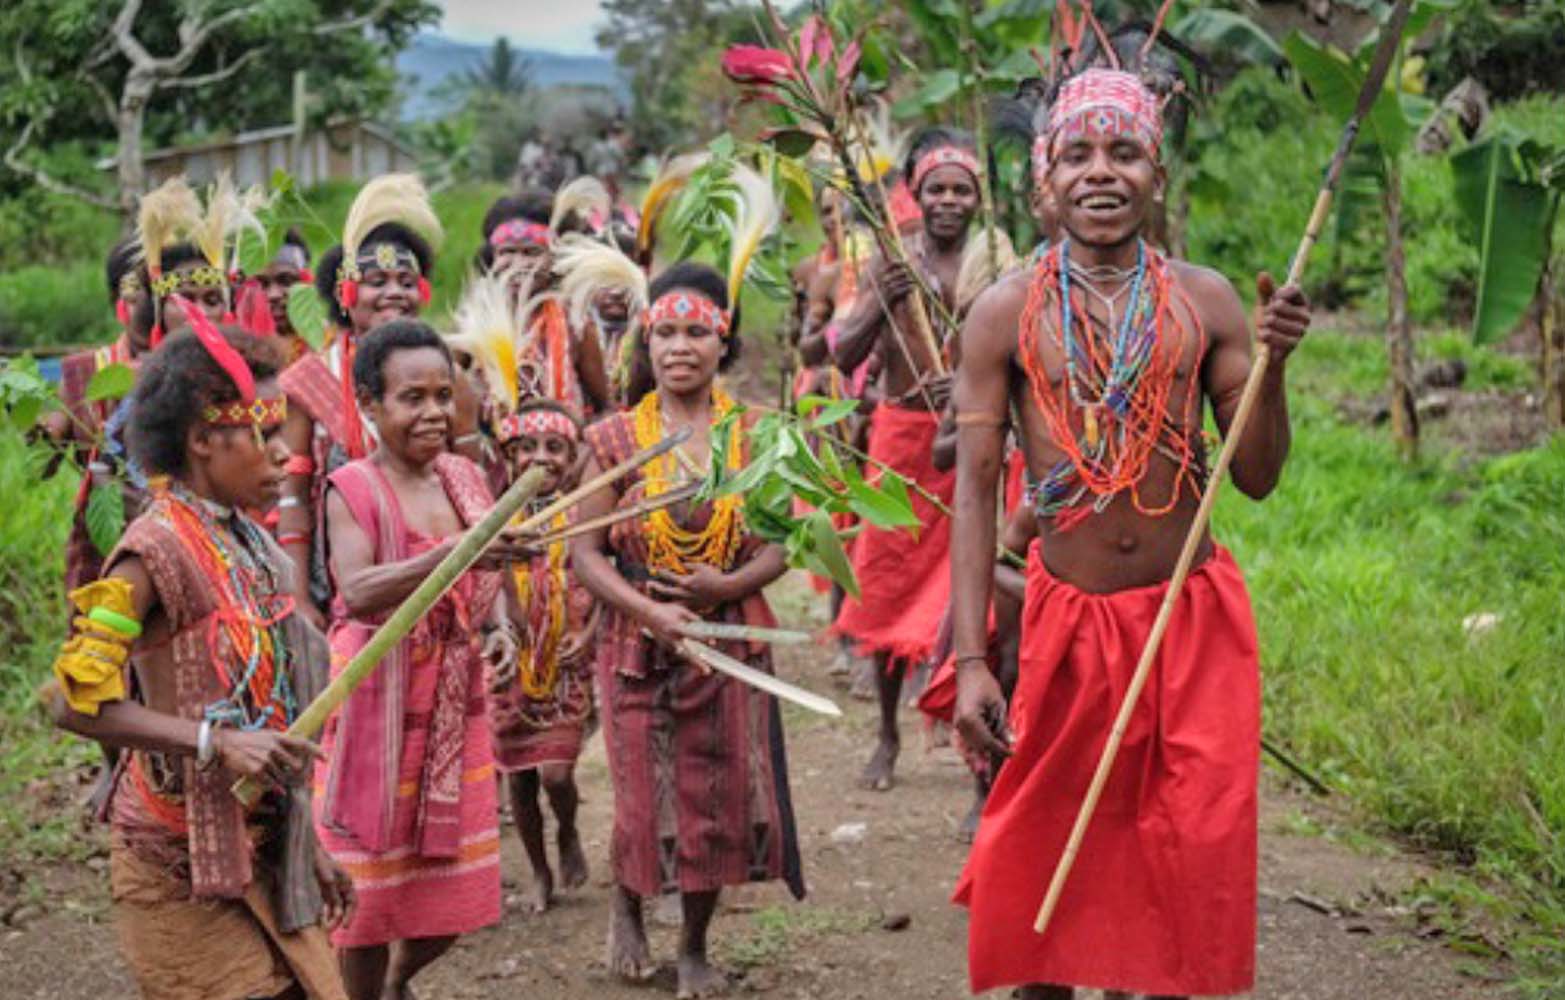 Traditional Papuan dancing. (Jonathan McCloud)